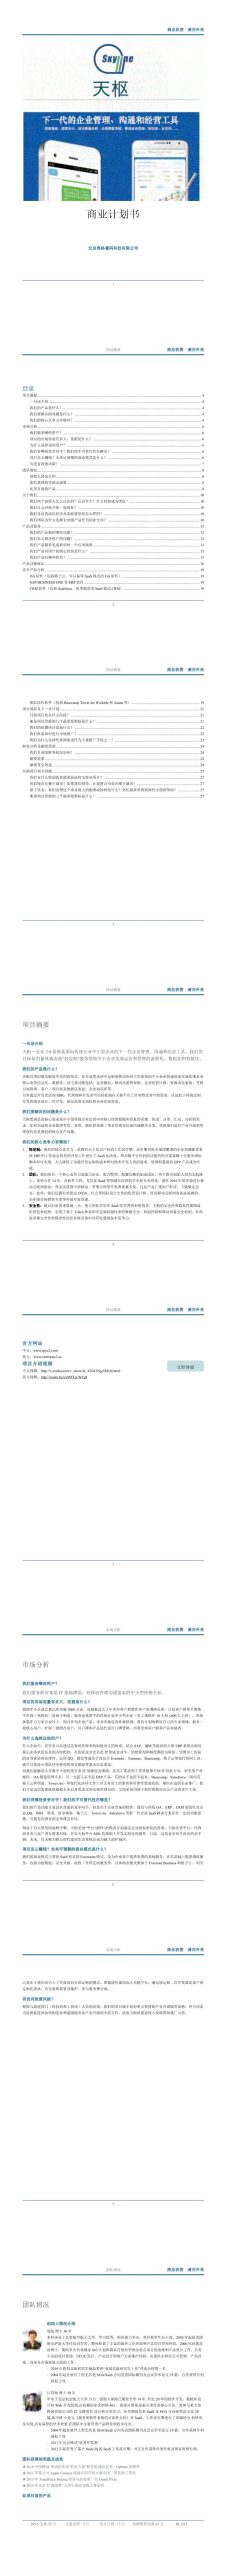 北京奥格睿码科技有限公司项目运营报告